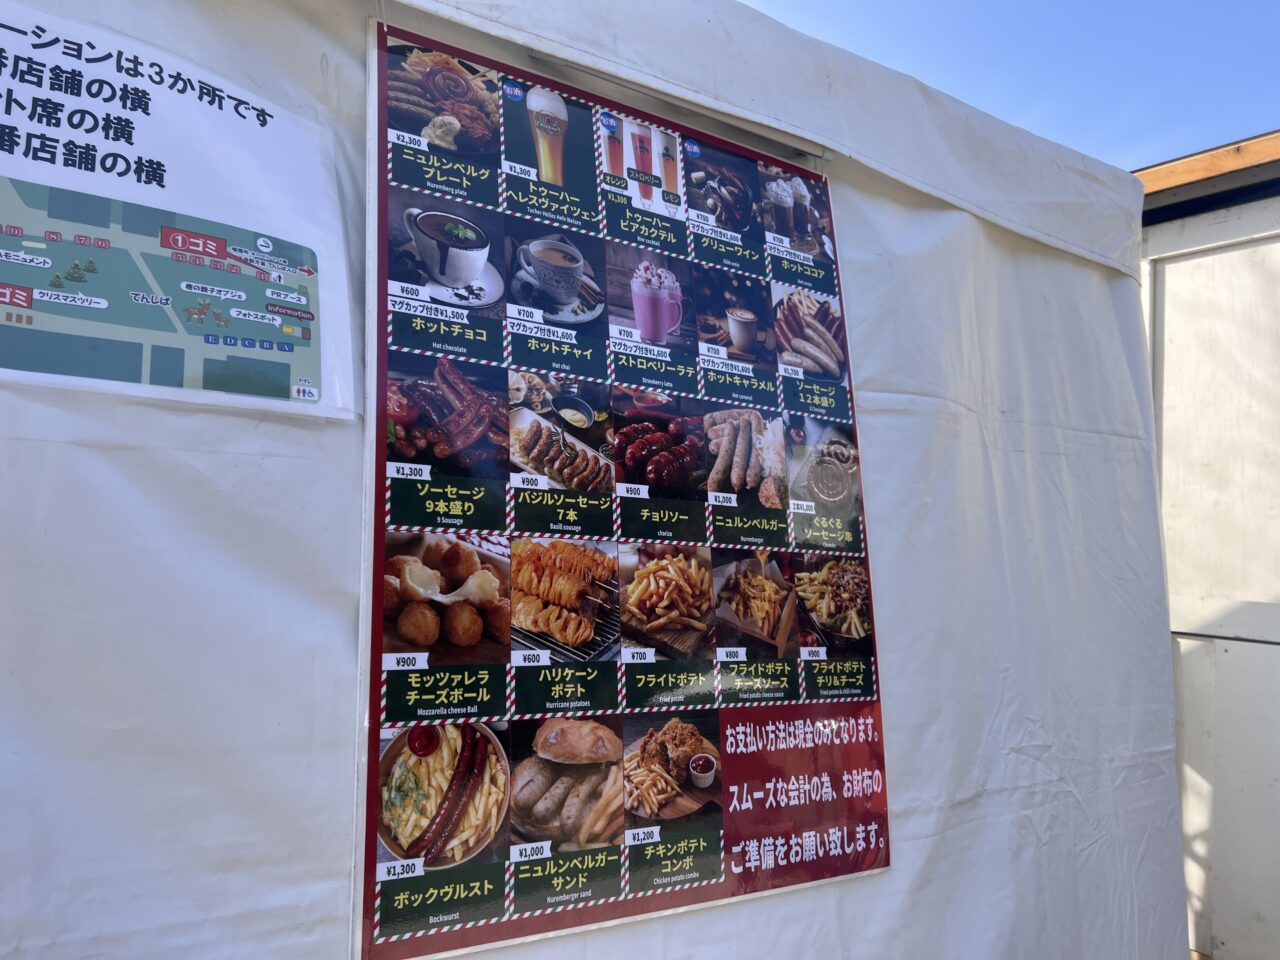 天王寺公園(てんしば)で開催されている「大阪クリスマスマーケットの飲食店のグルメメニューです